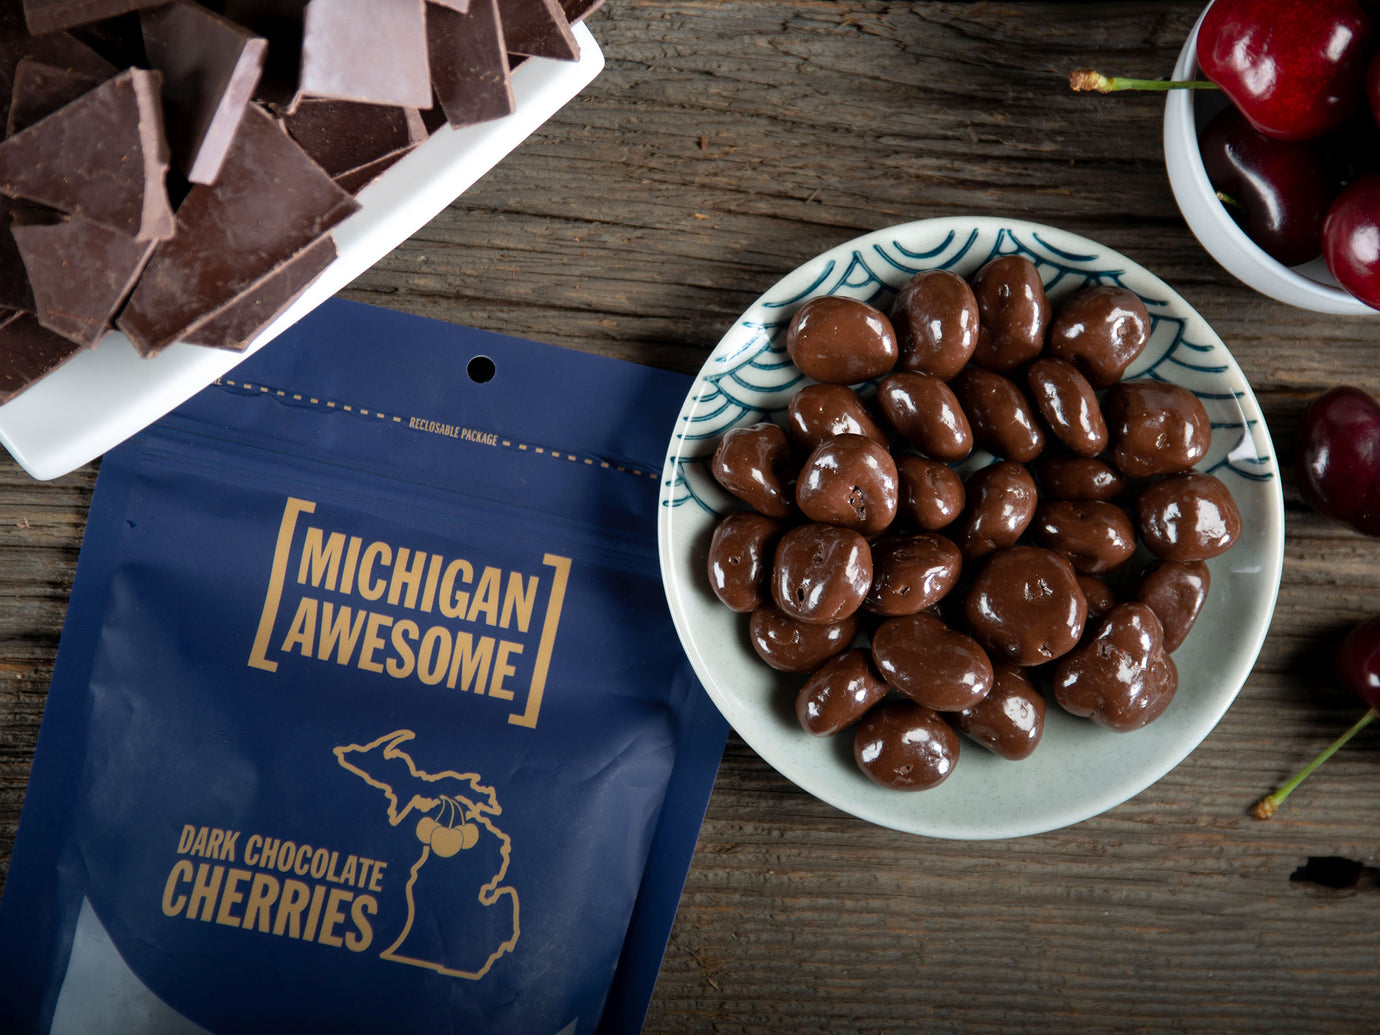 Michigan Awesome Dark Chocolate Cherries